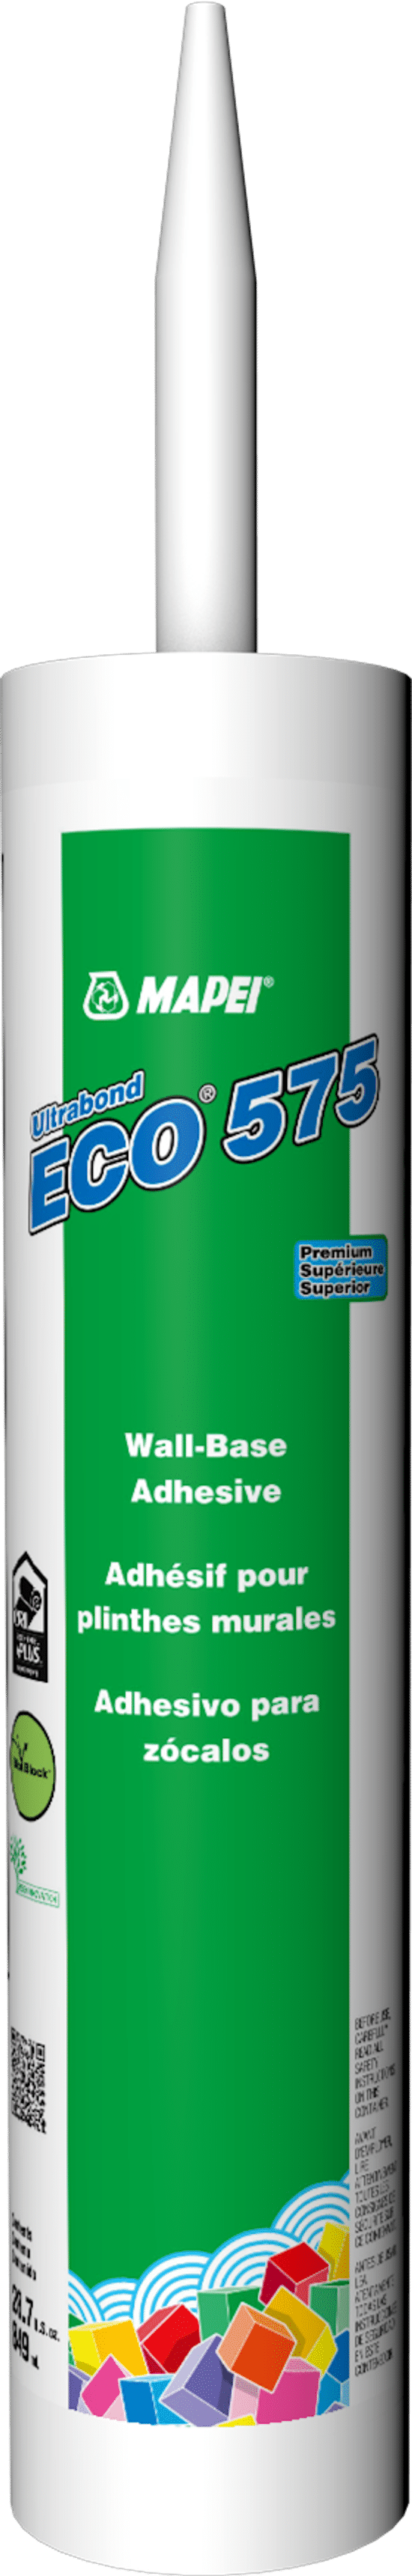 Ultrabond ECO 575 Adhésif de qualité supérieure pour plinthes murales - 849 mL